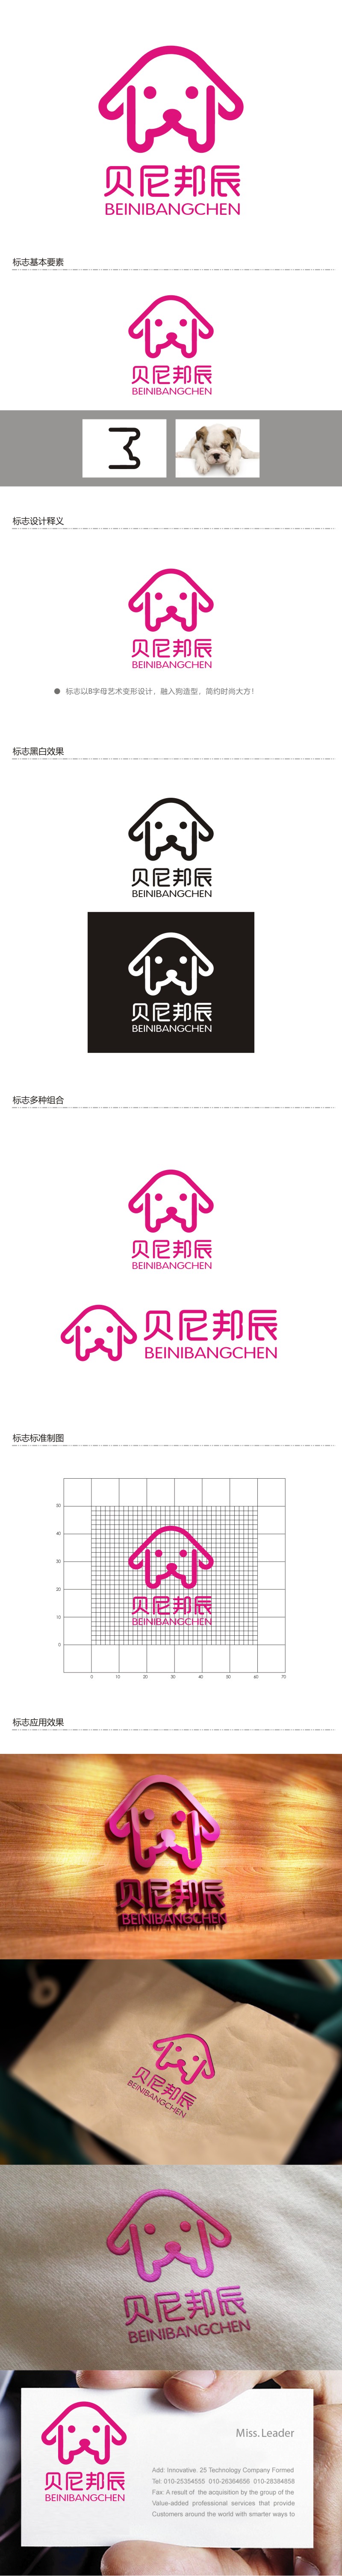 谭家强的贝尼邦辰logo设计